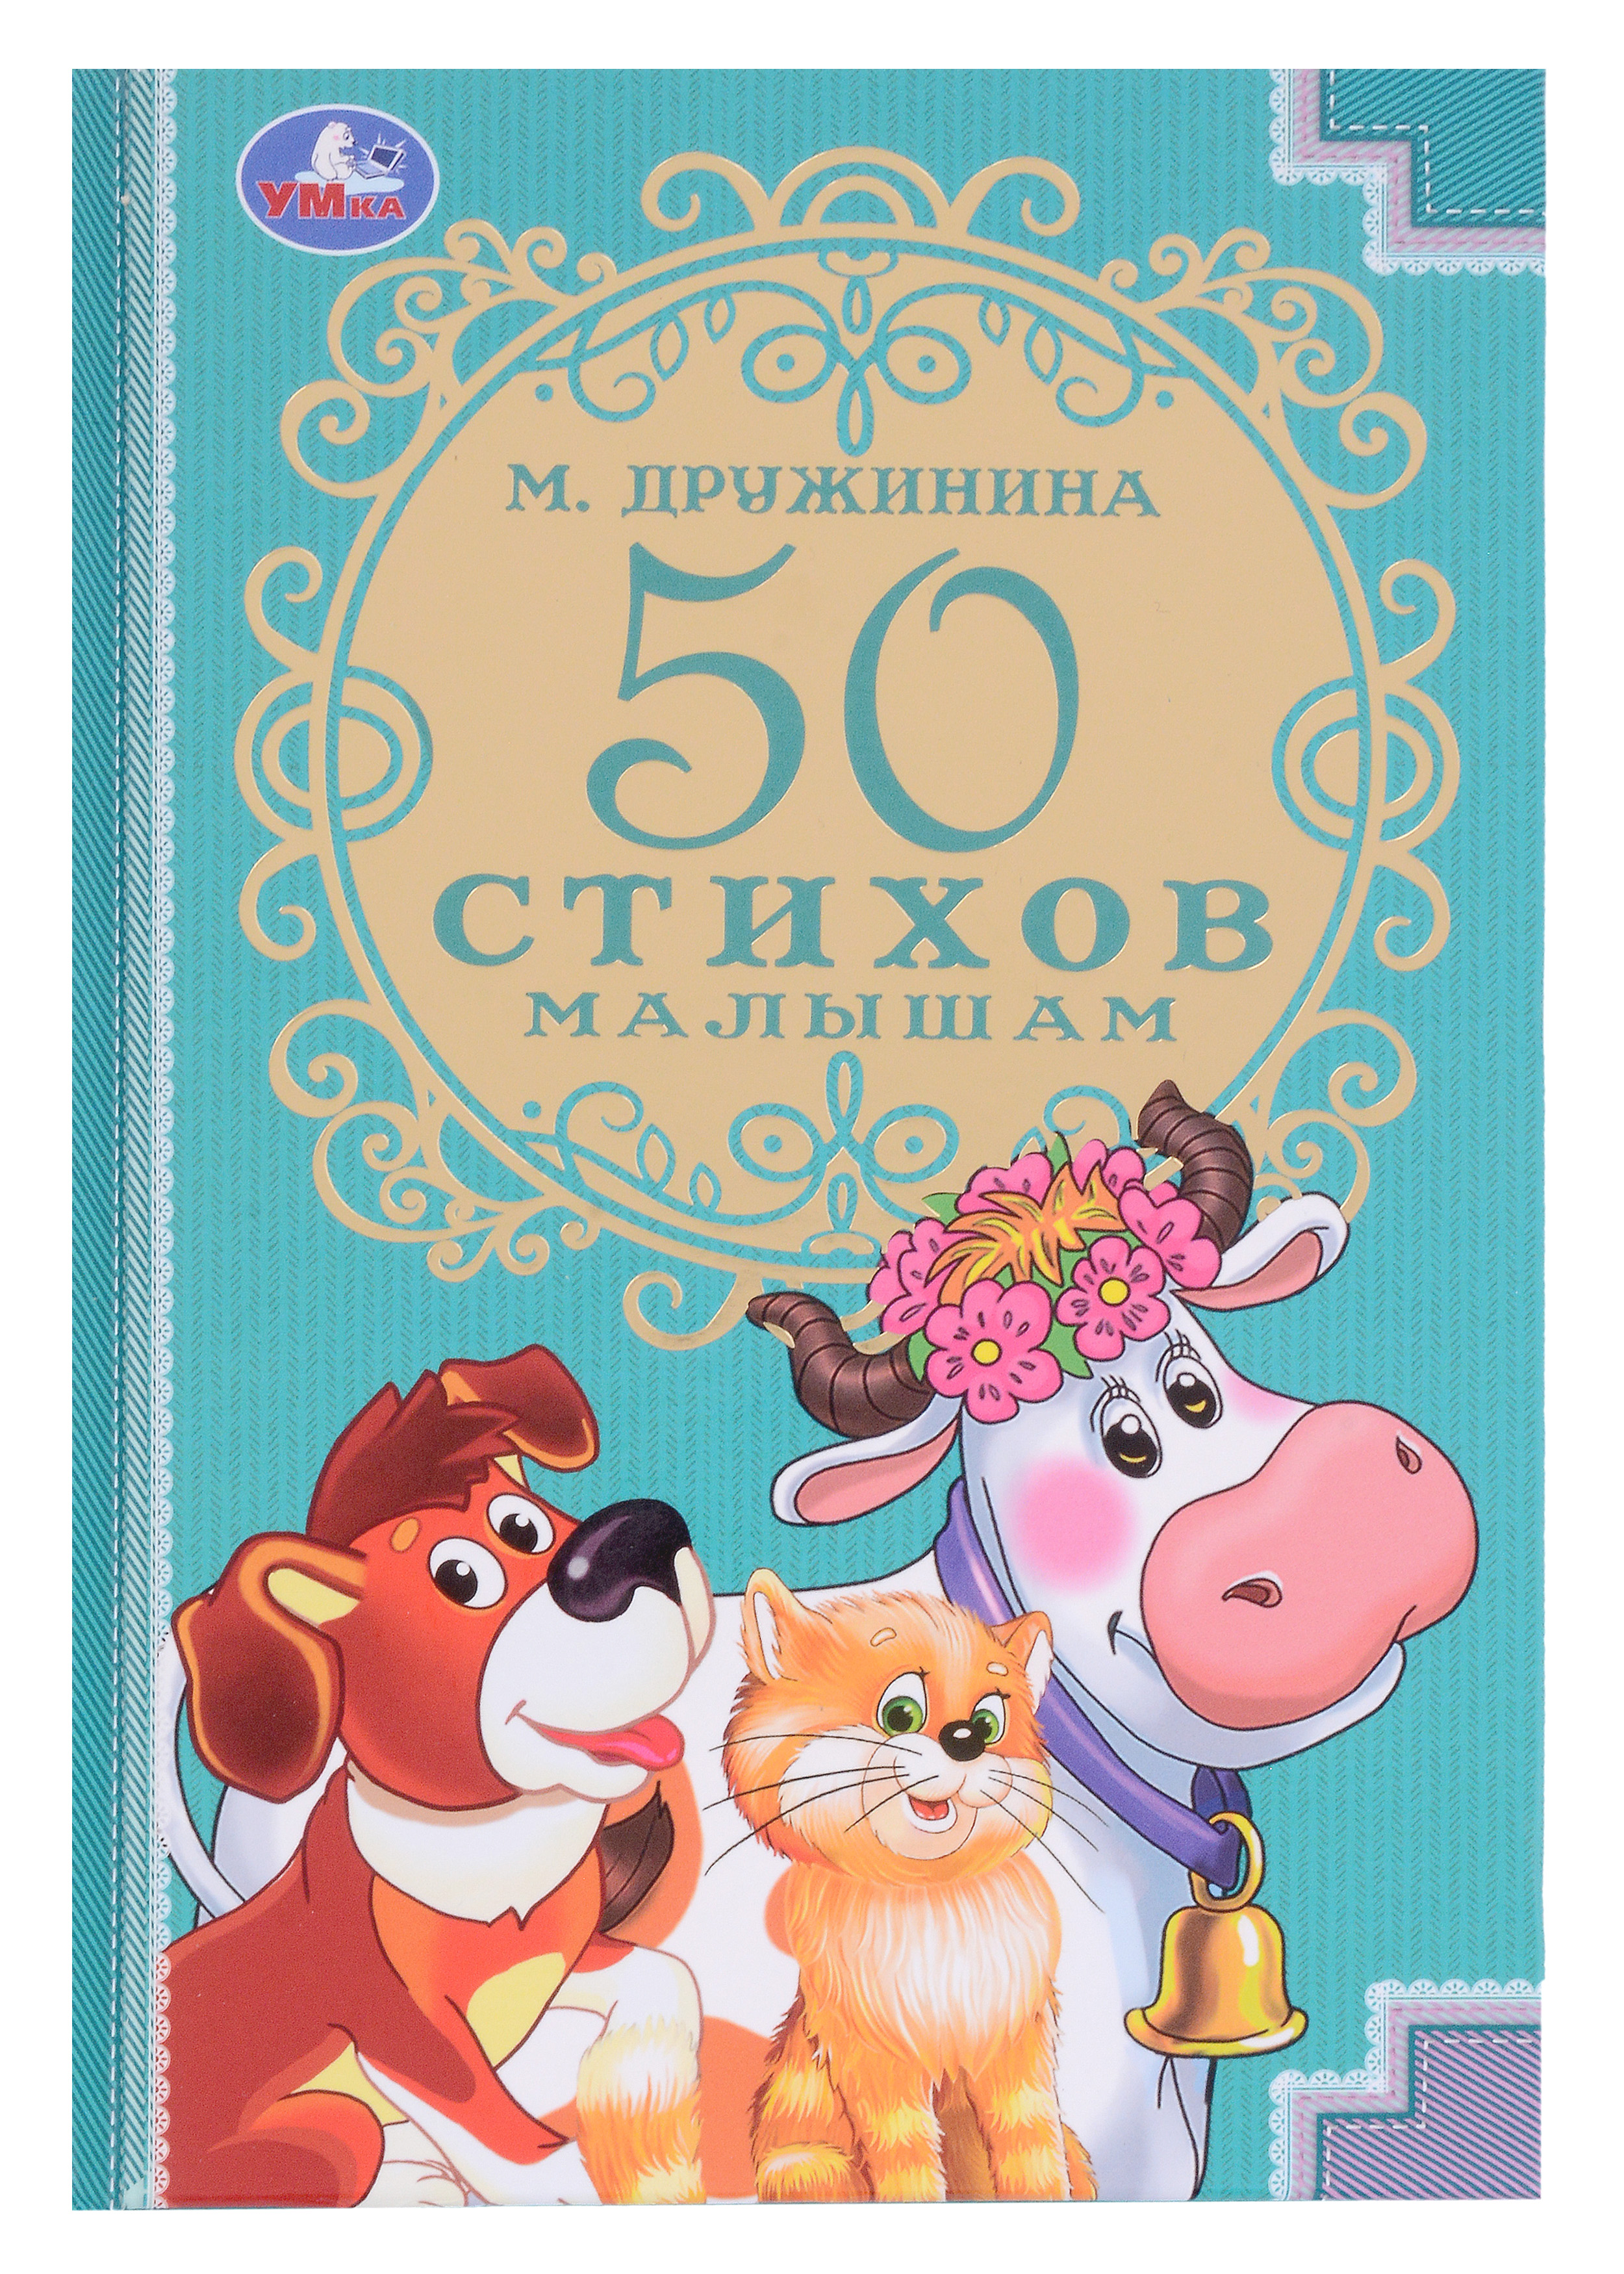 Дружинина Марина Владимировна - 50 стихов малышам